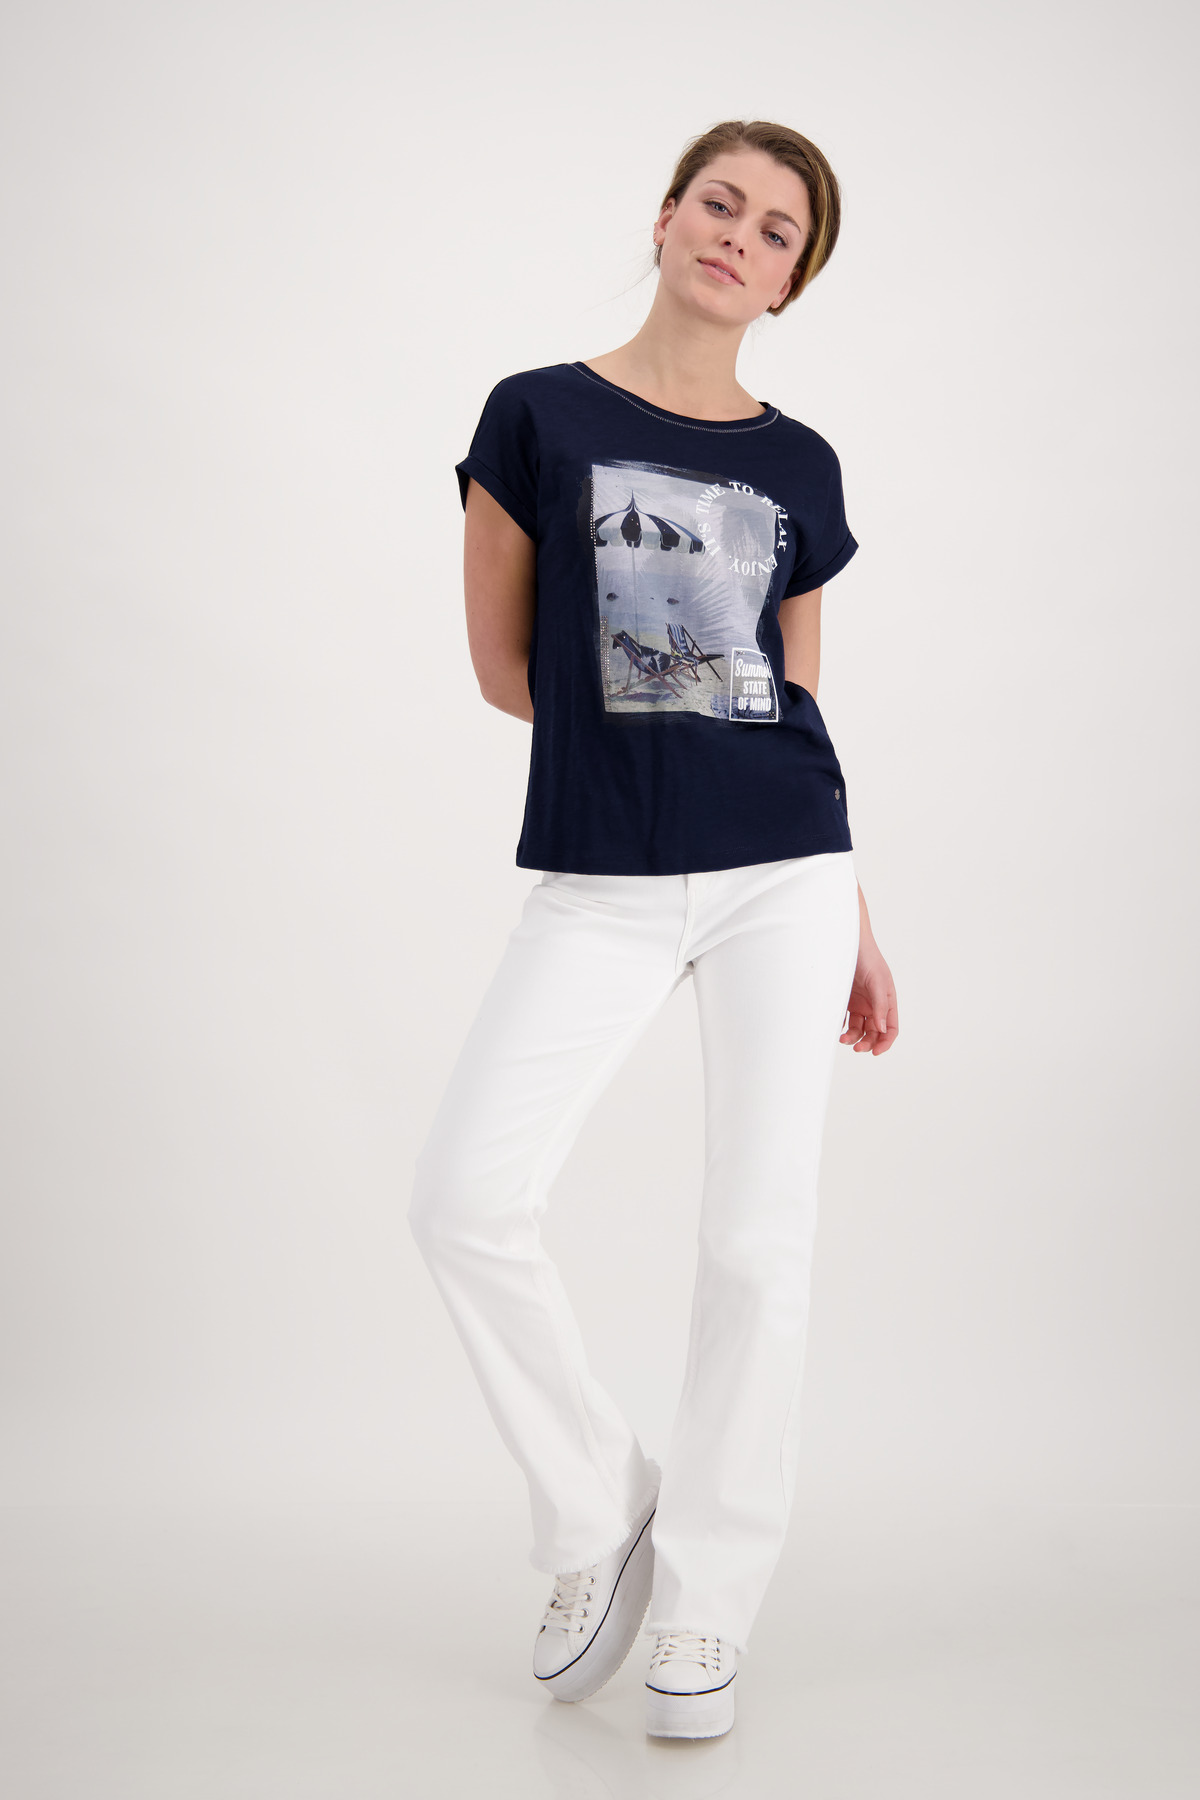 Shirt - Monari mit Schrift Horsthemke Print Beach 3D